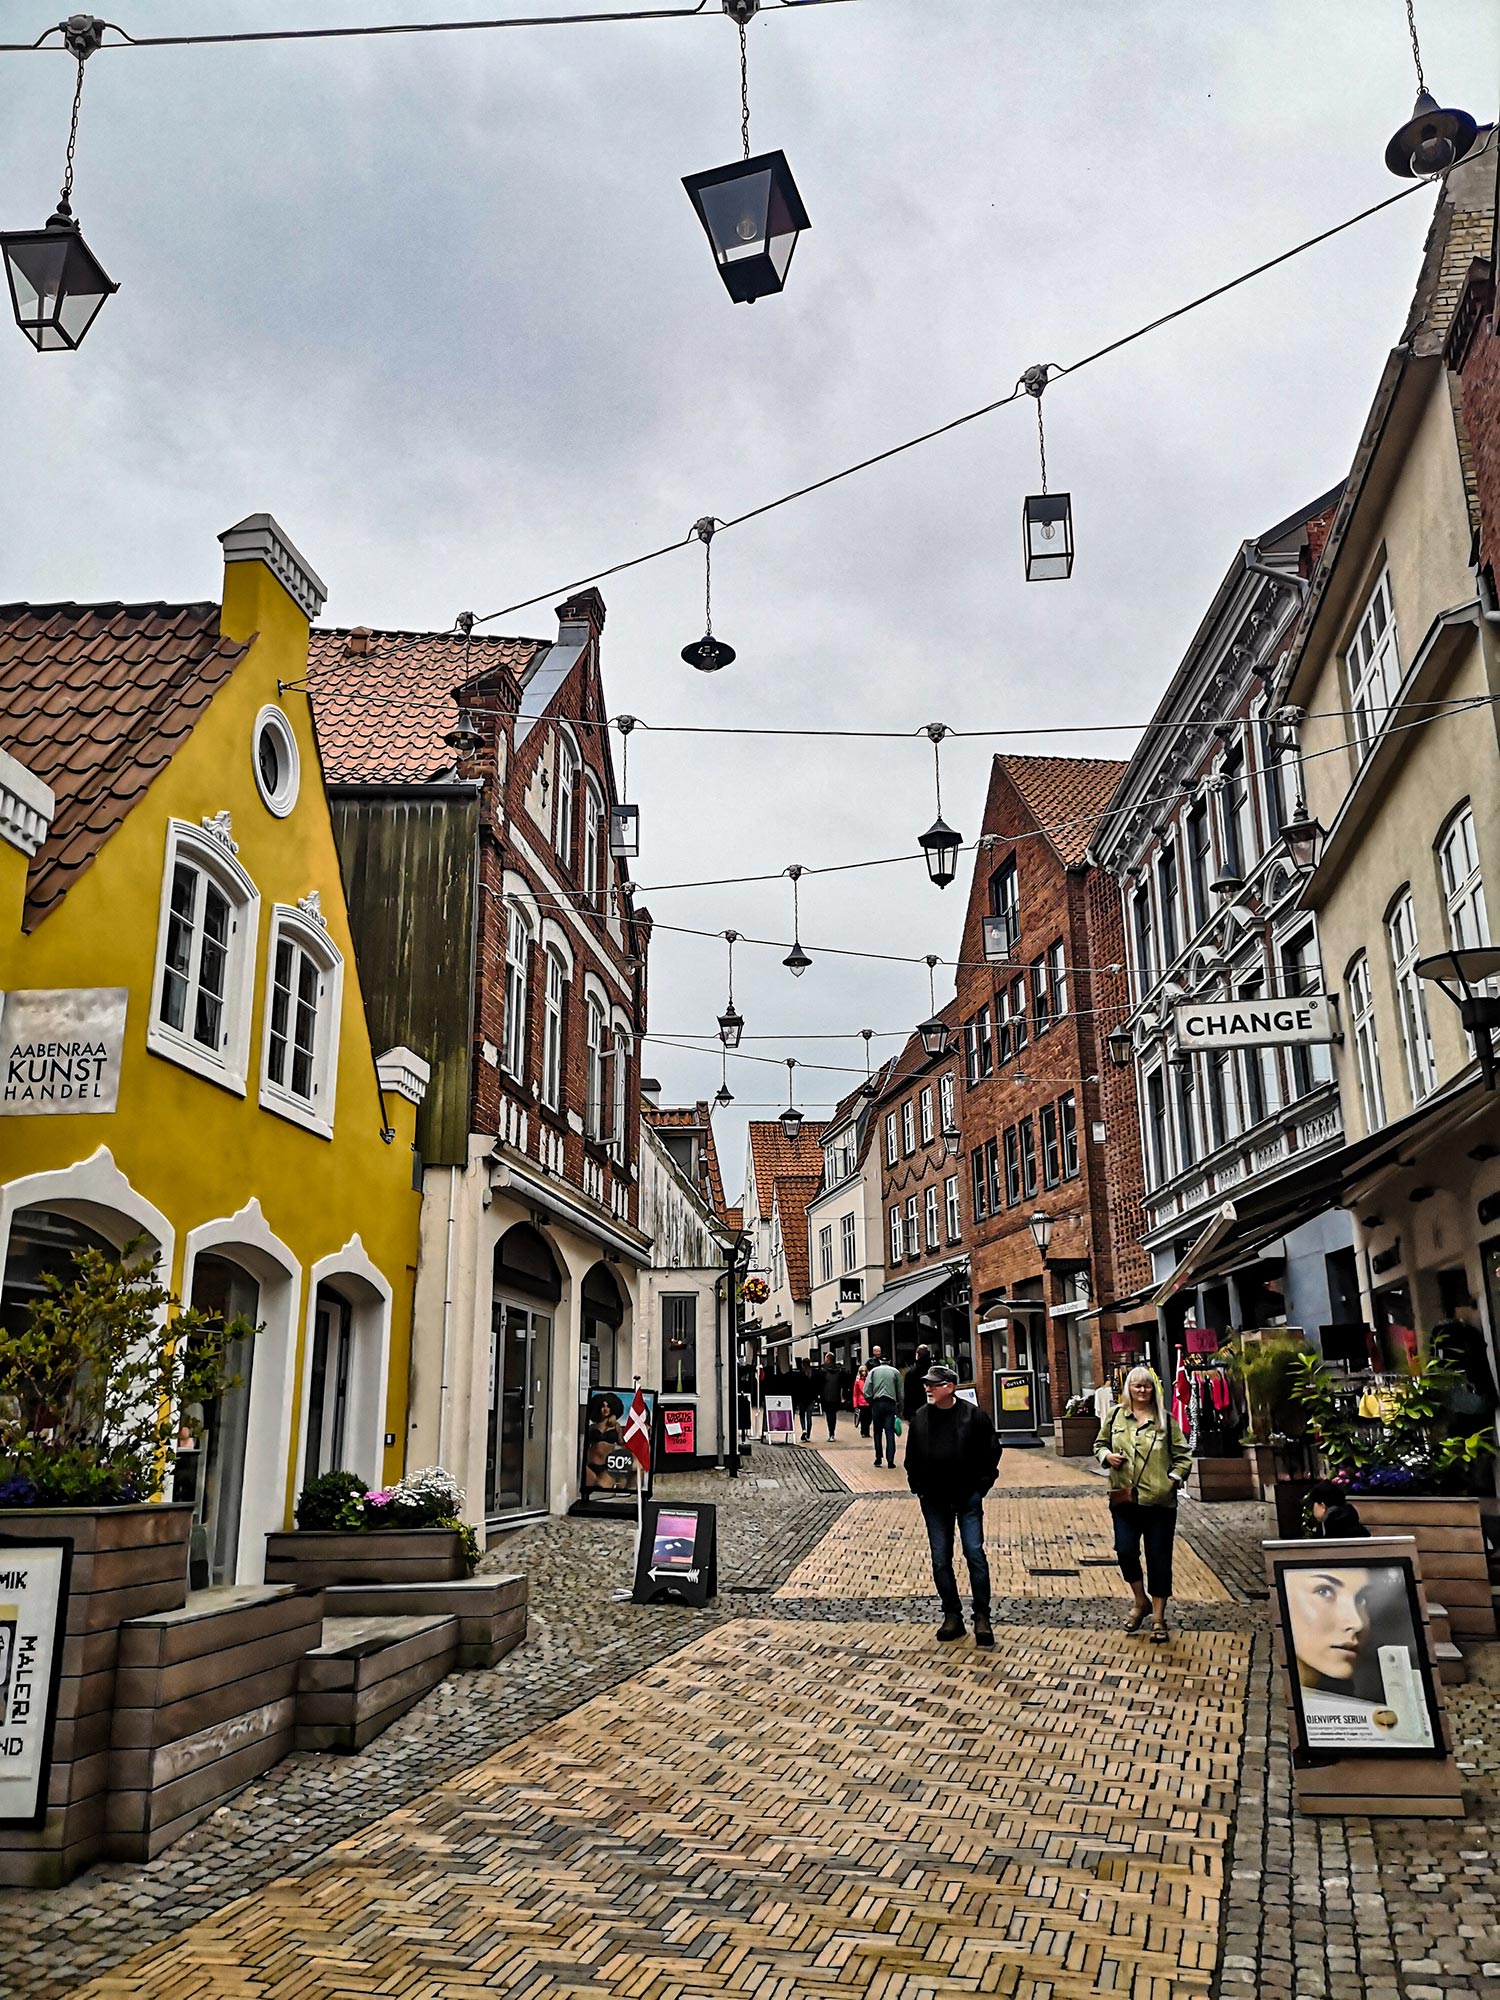 Centre ville d'une ville au Danemark avec des piétons sur une route pavé.